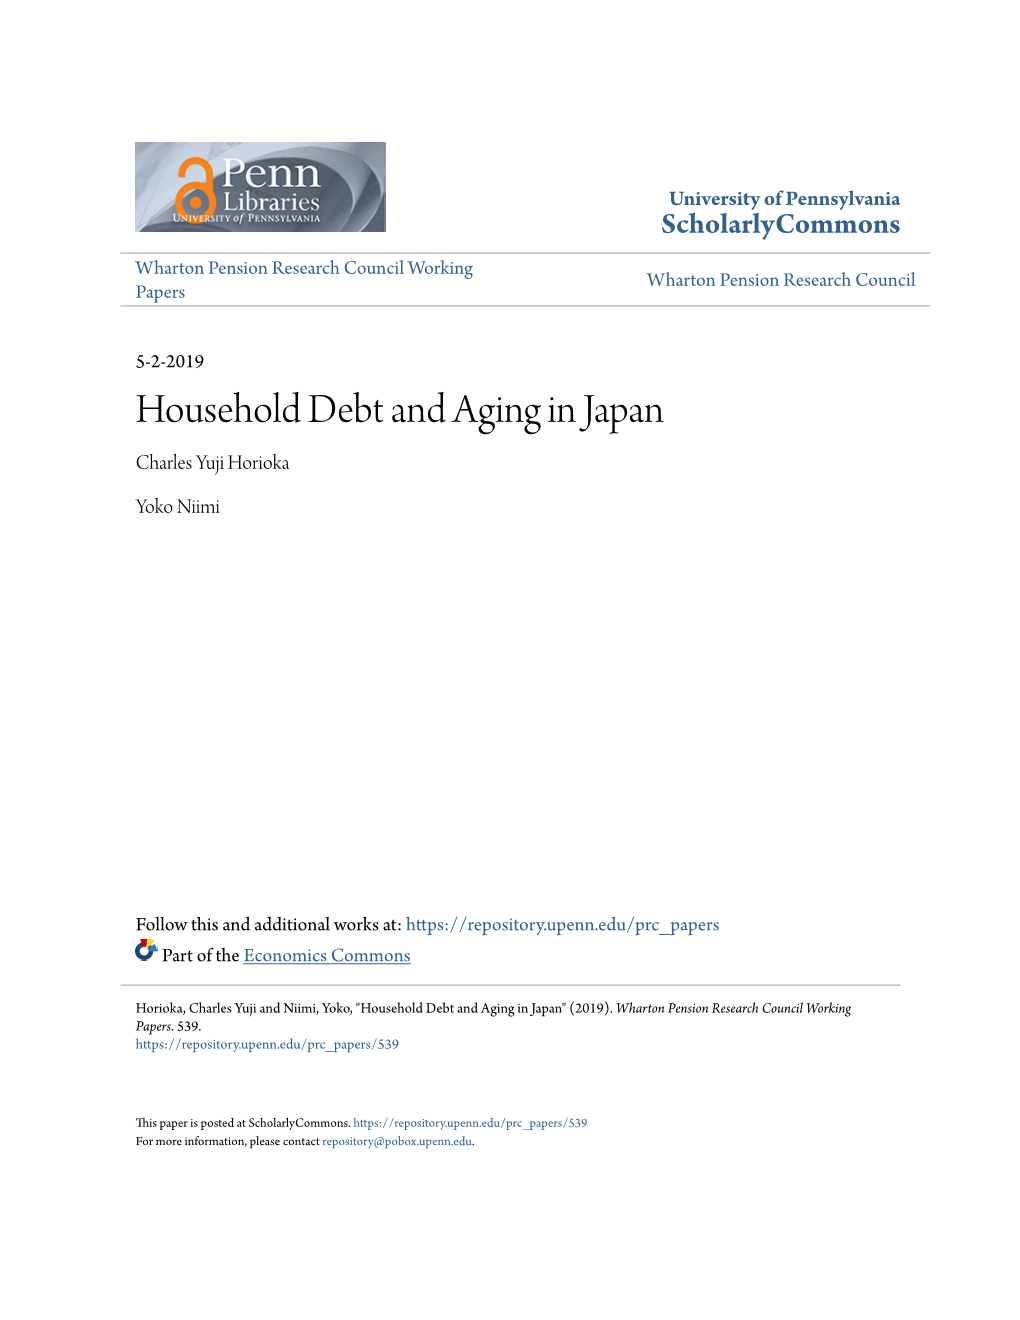 Household Debt and Aging in Japan Charles Yuji Horioka